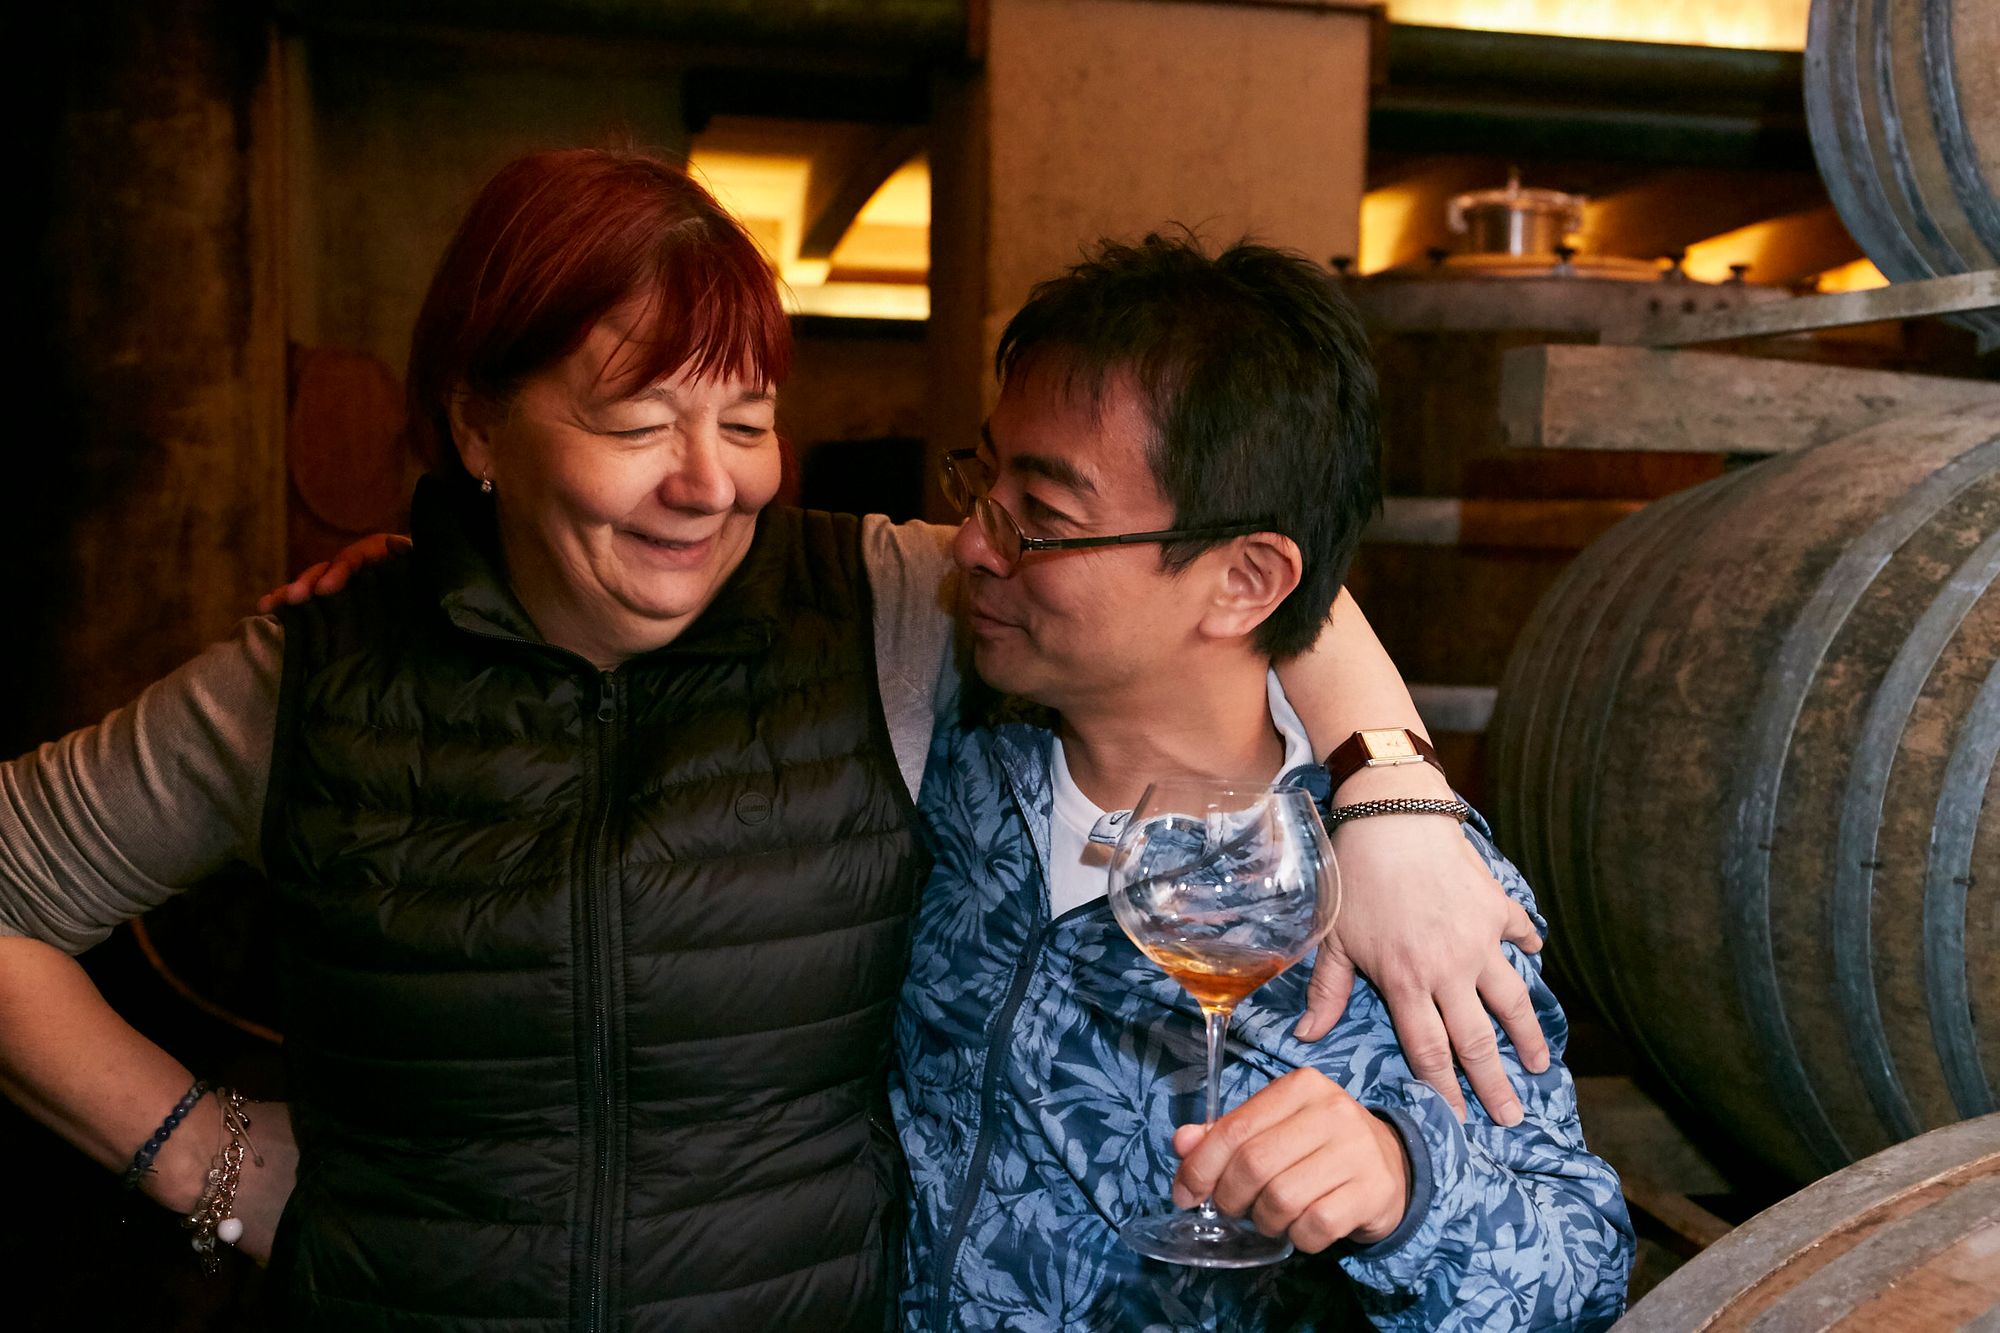 Hisato Ota and winemaker Susanna Radikon